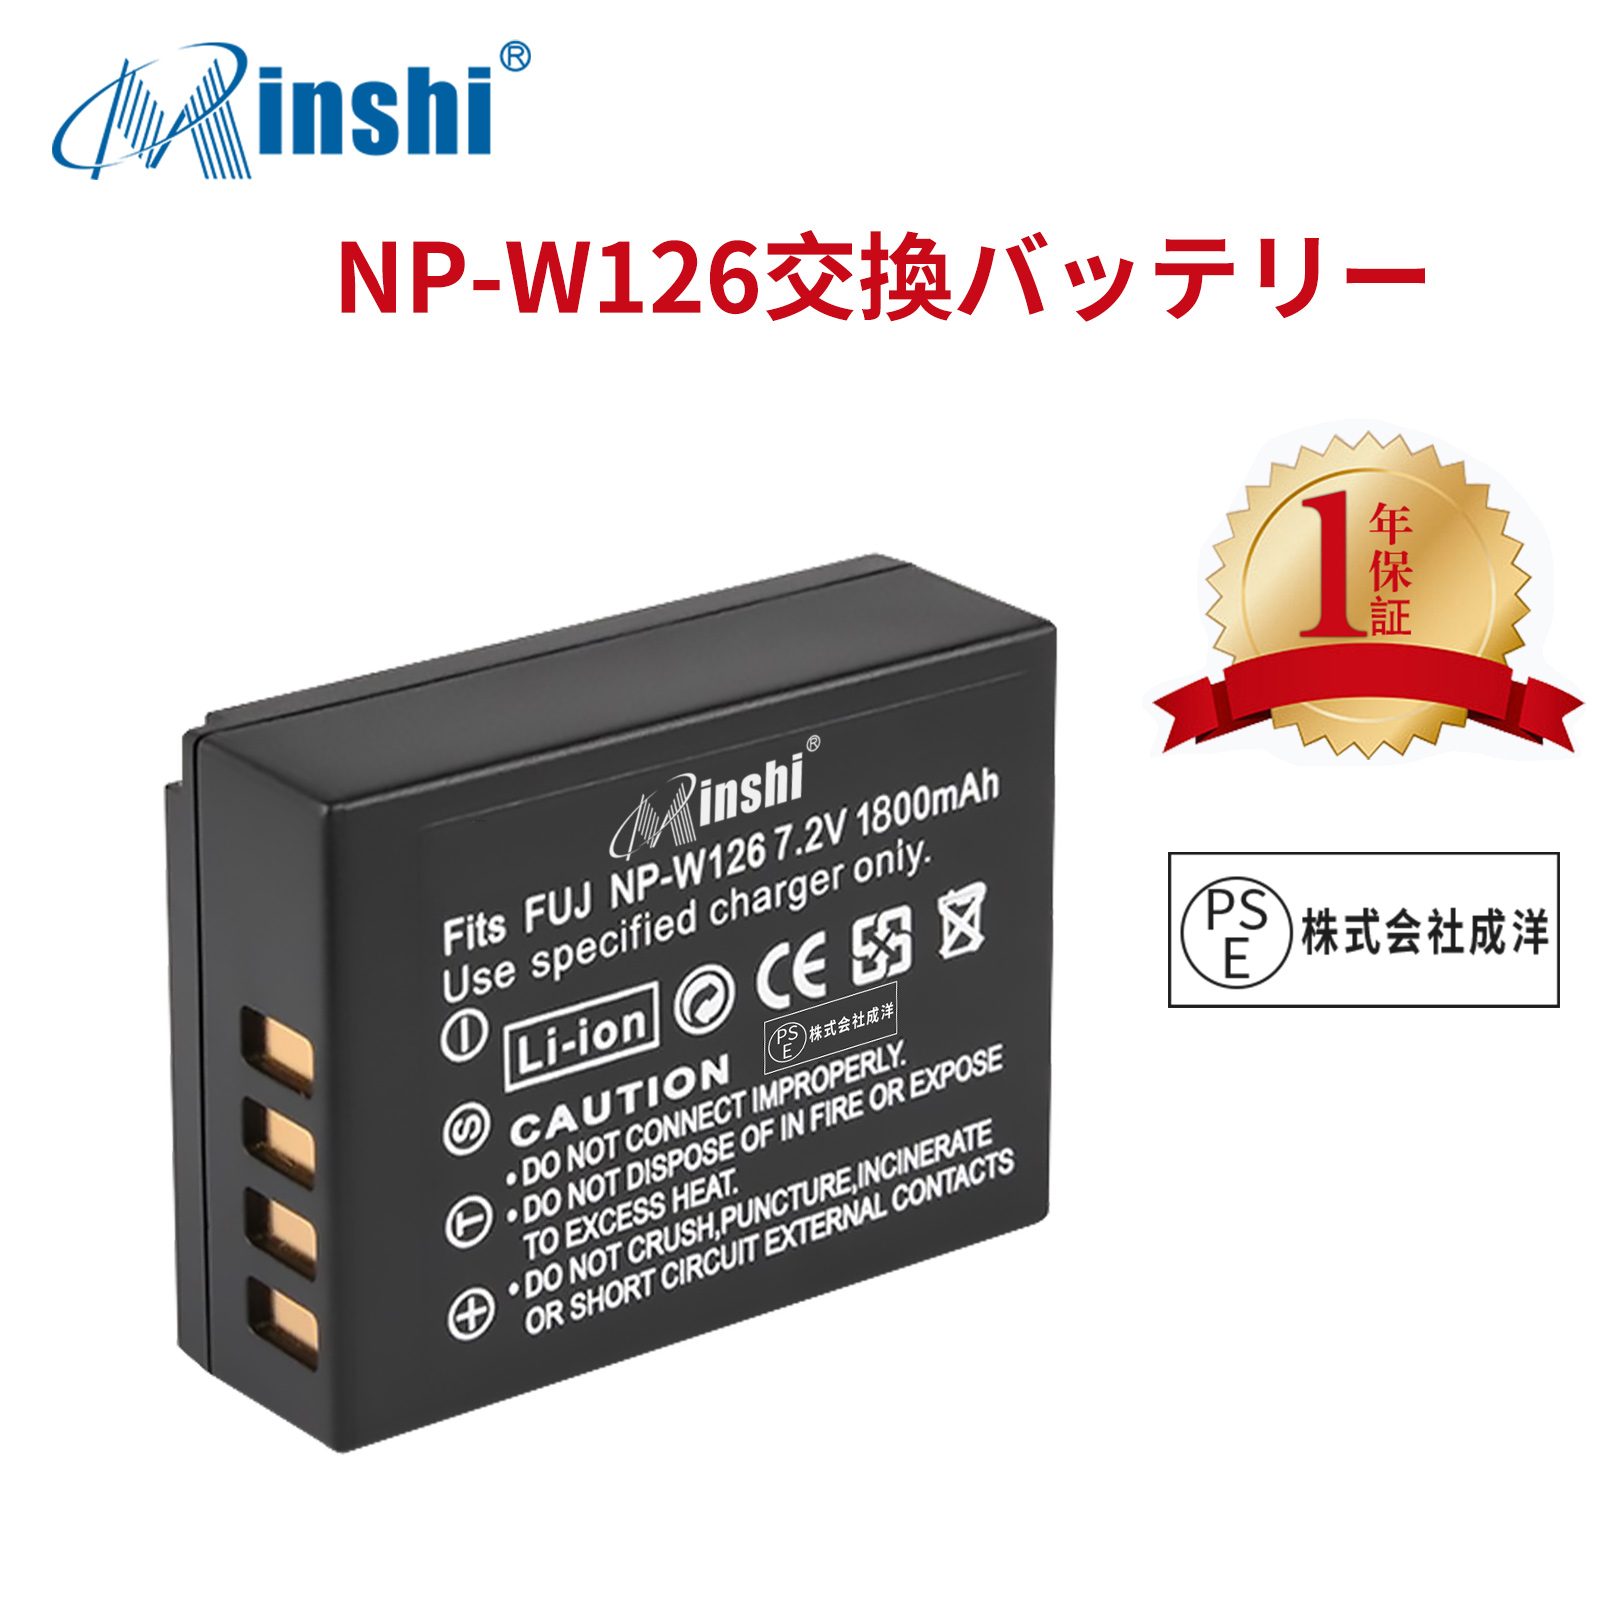 【1年保証】minshi FUJIFILM X-E1 NP-W126S 【1800mAh 7.2V】 NP-W126 NP-W126S高品質 NP-W126S NP-W126互換バッテリー